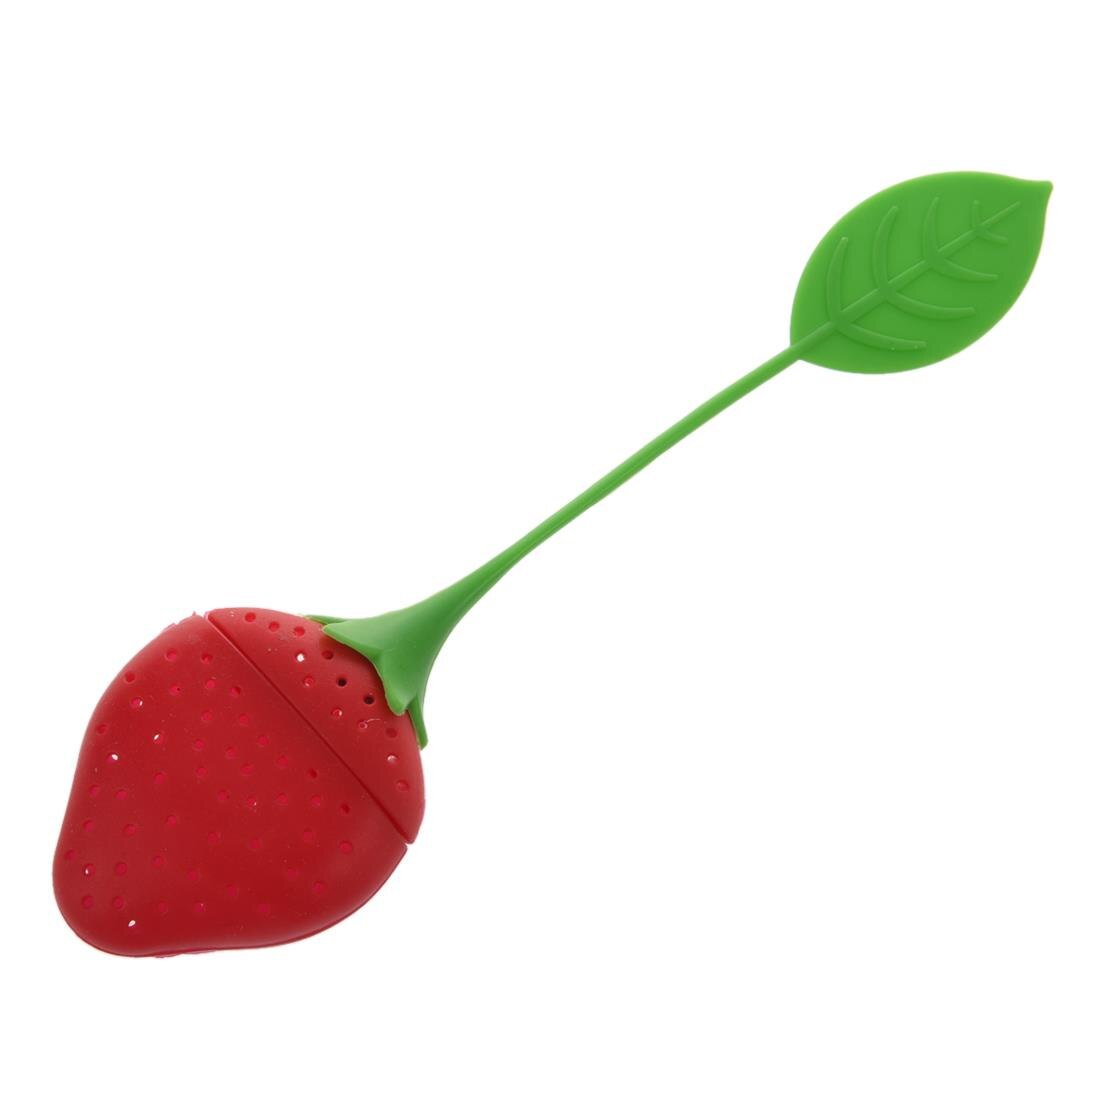 Strawberry Silicone Tea Zetgroep Zeef-Rood En Groen/Geschikt Voor Gebruik In Theepot, theekopje En Meer-Een Prachtige